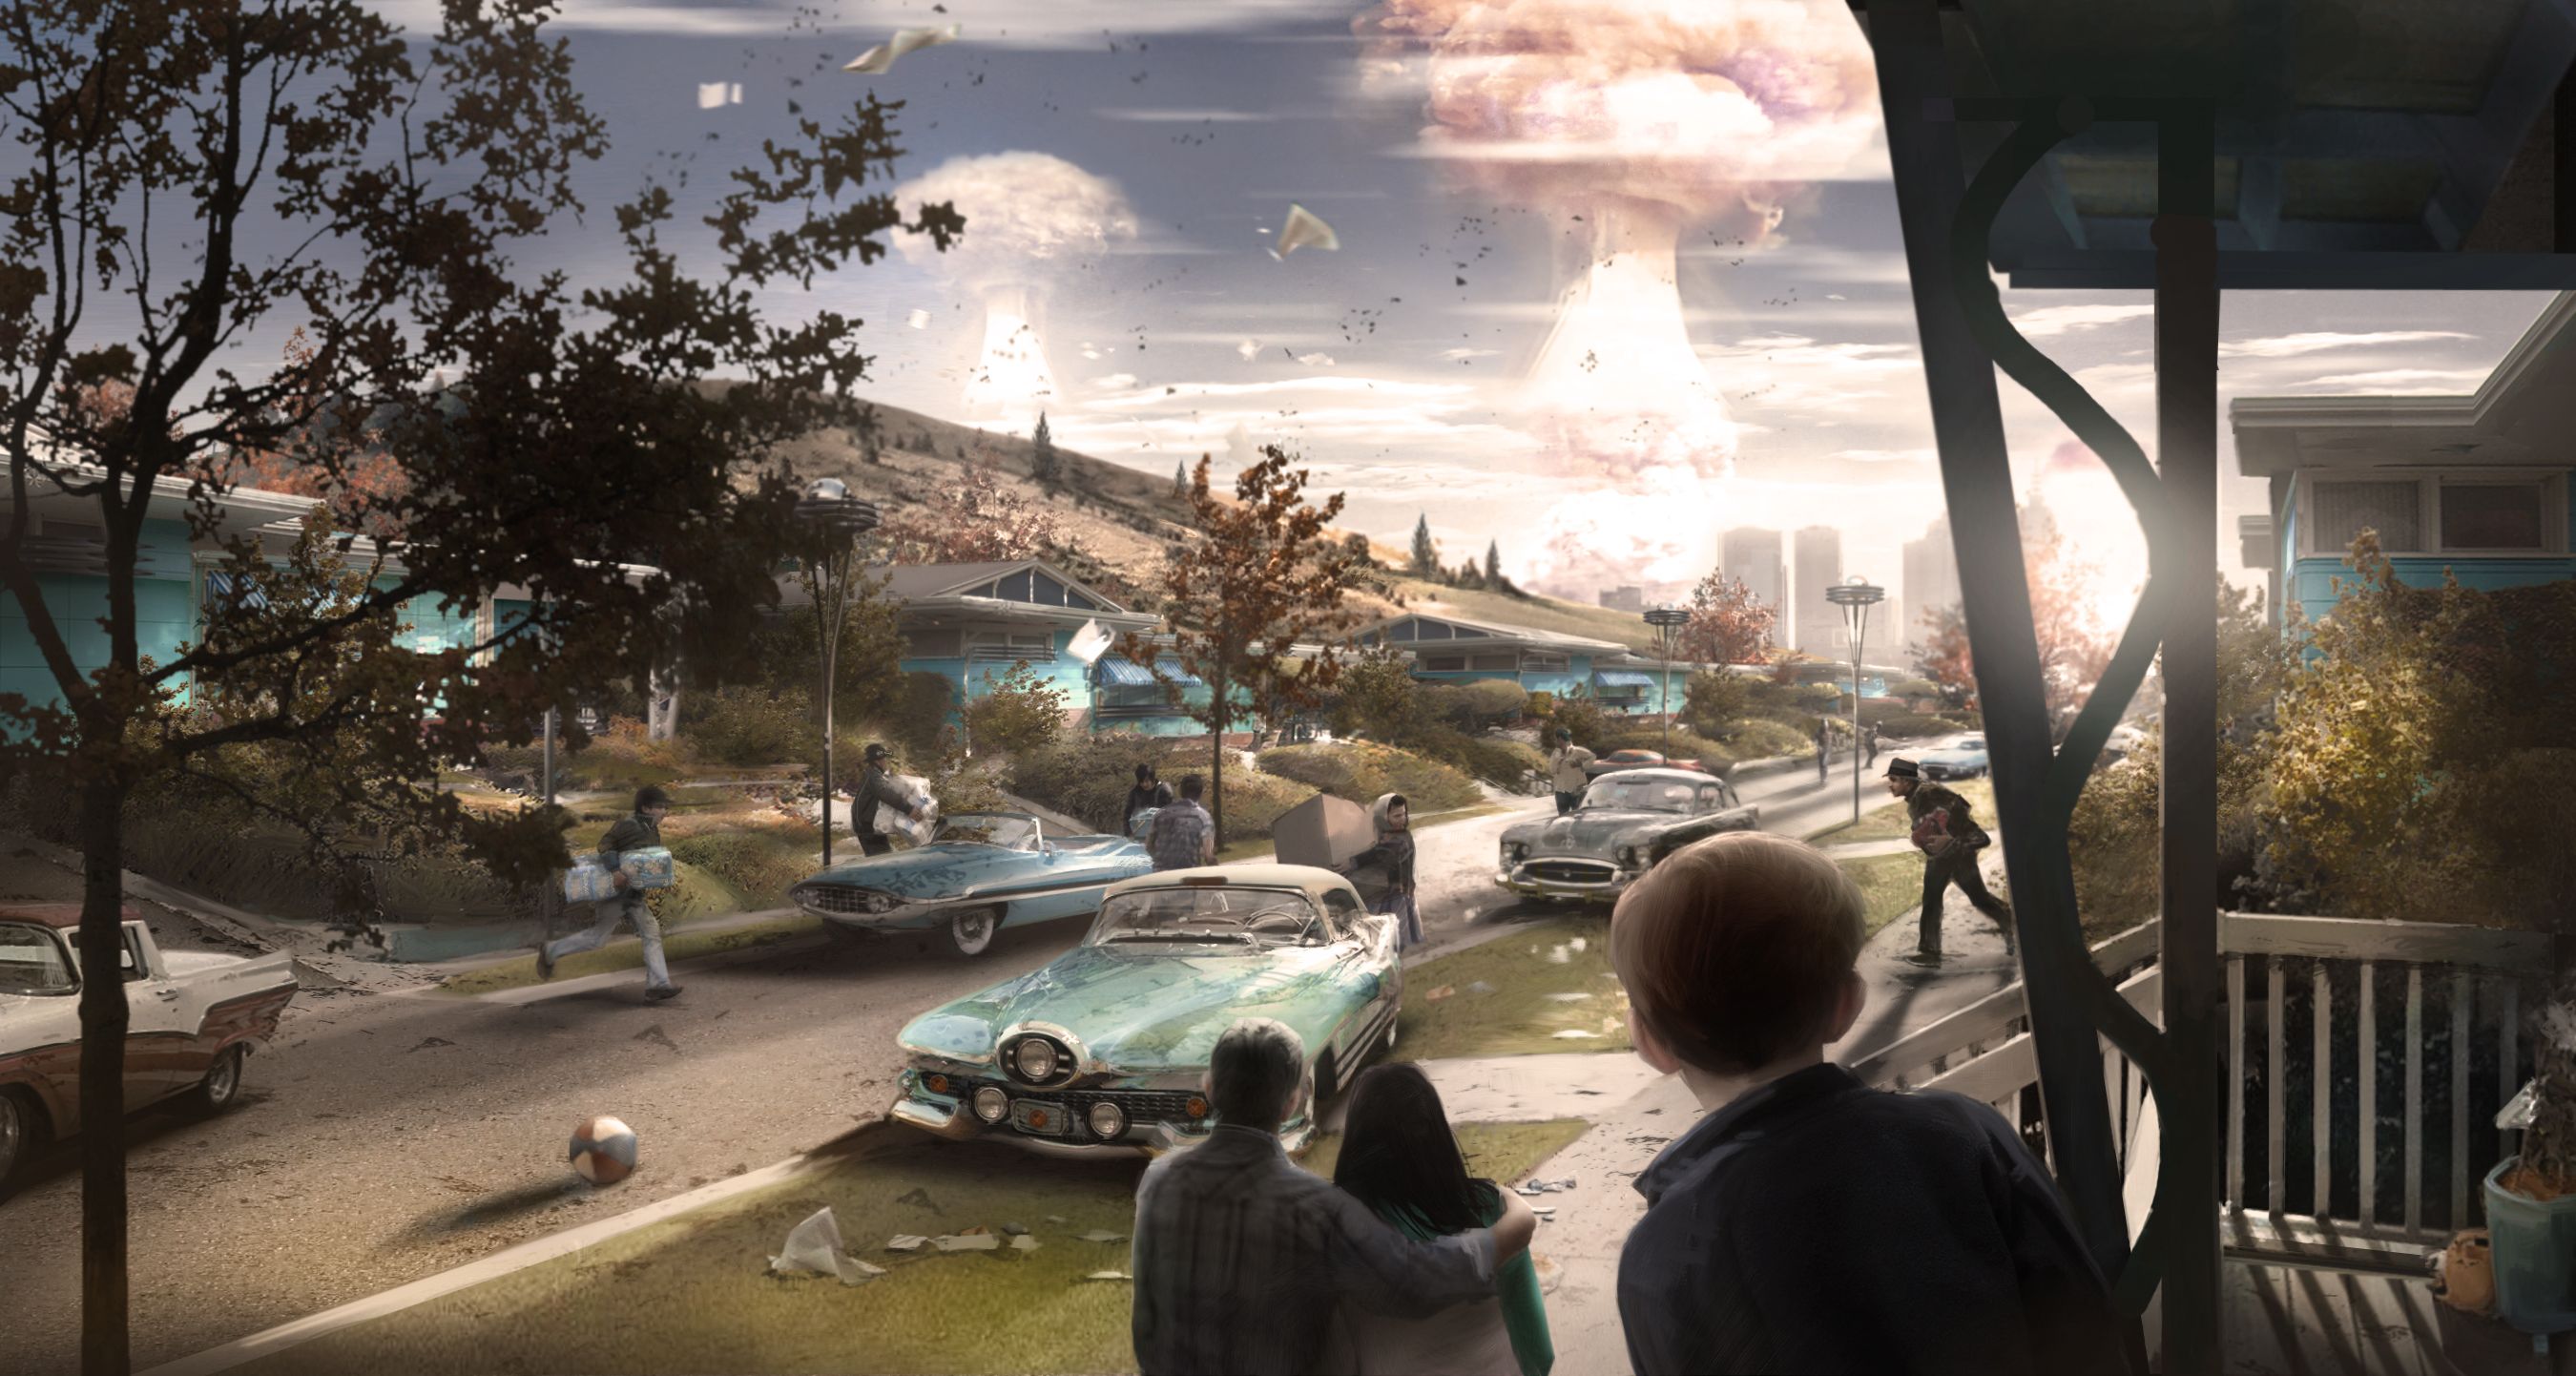 Fuentes De Informaci N Fallout Wallpaper